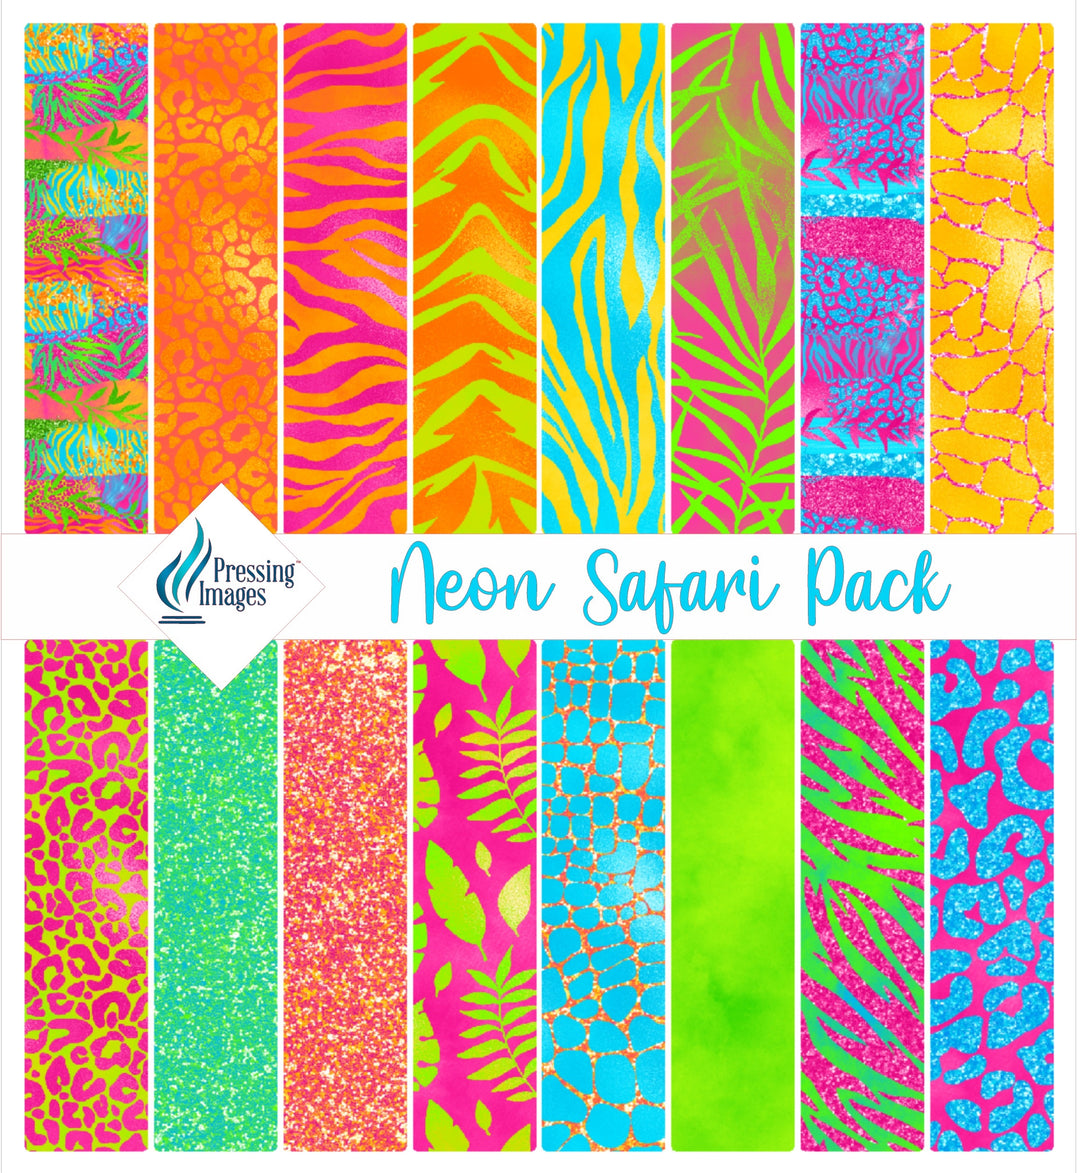 Neon Safari Pack